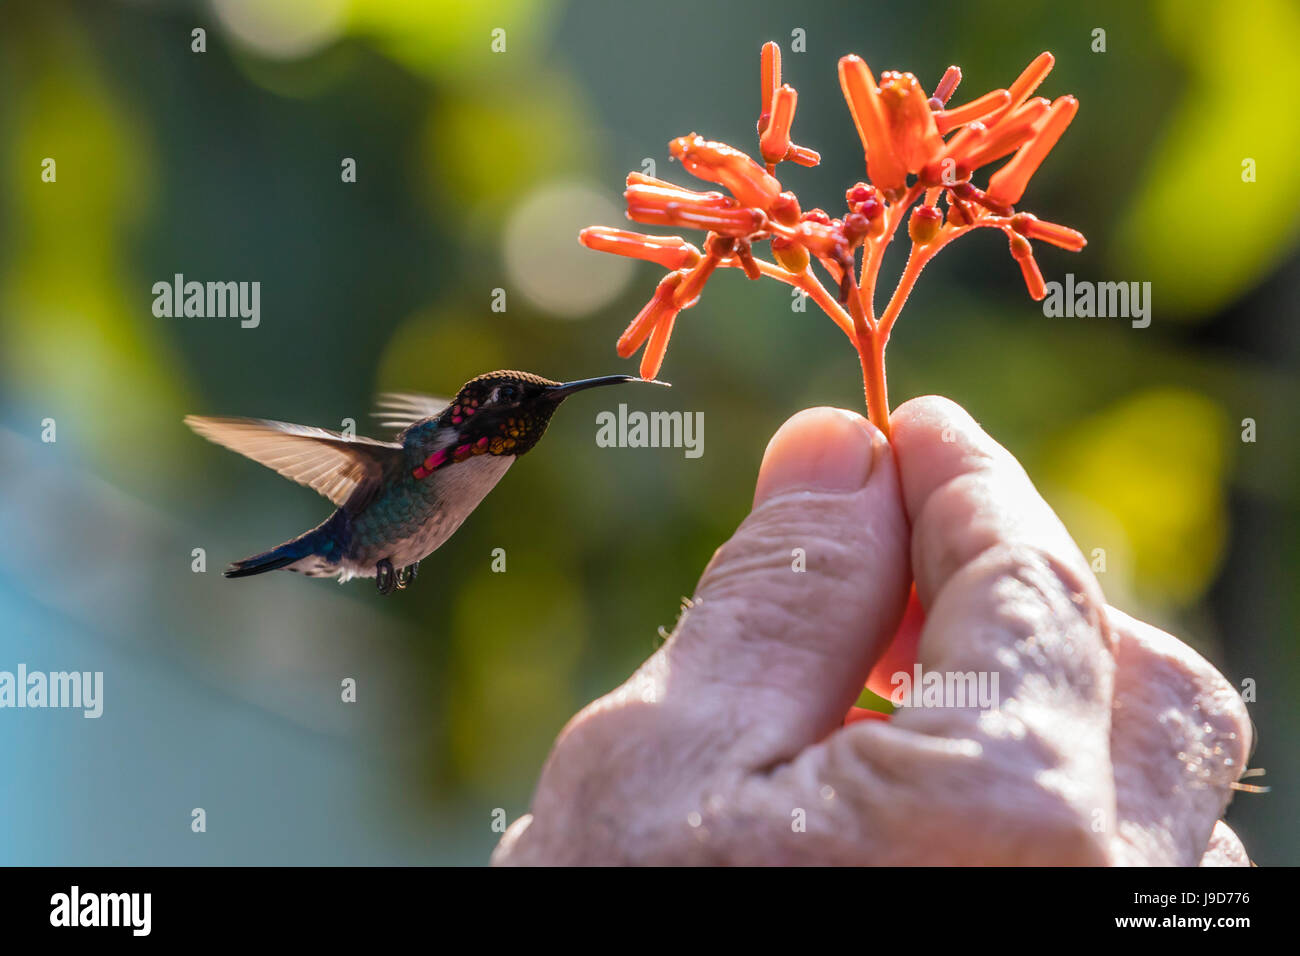 Un colibri d'hommes adultes sauvages (Mellisuga helenae), attirés par les fleurs à main près de Playa Larga, de Cuba, des Caraïbes Banque D'Images